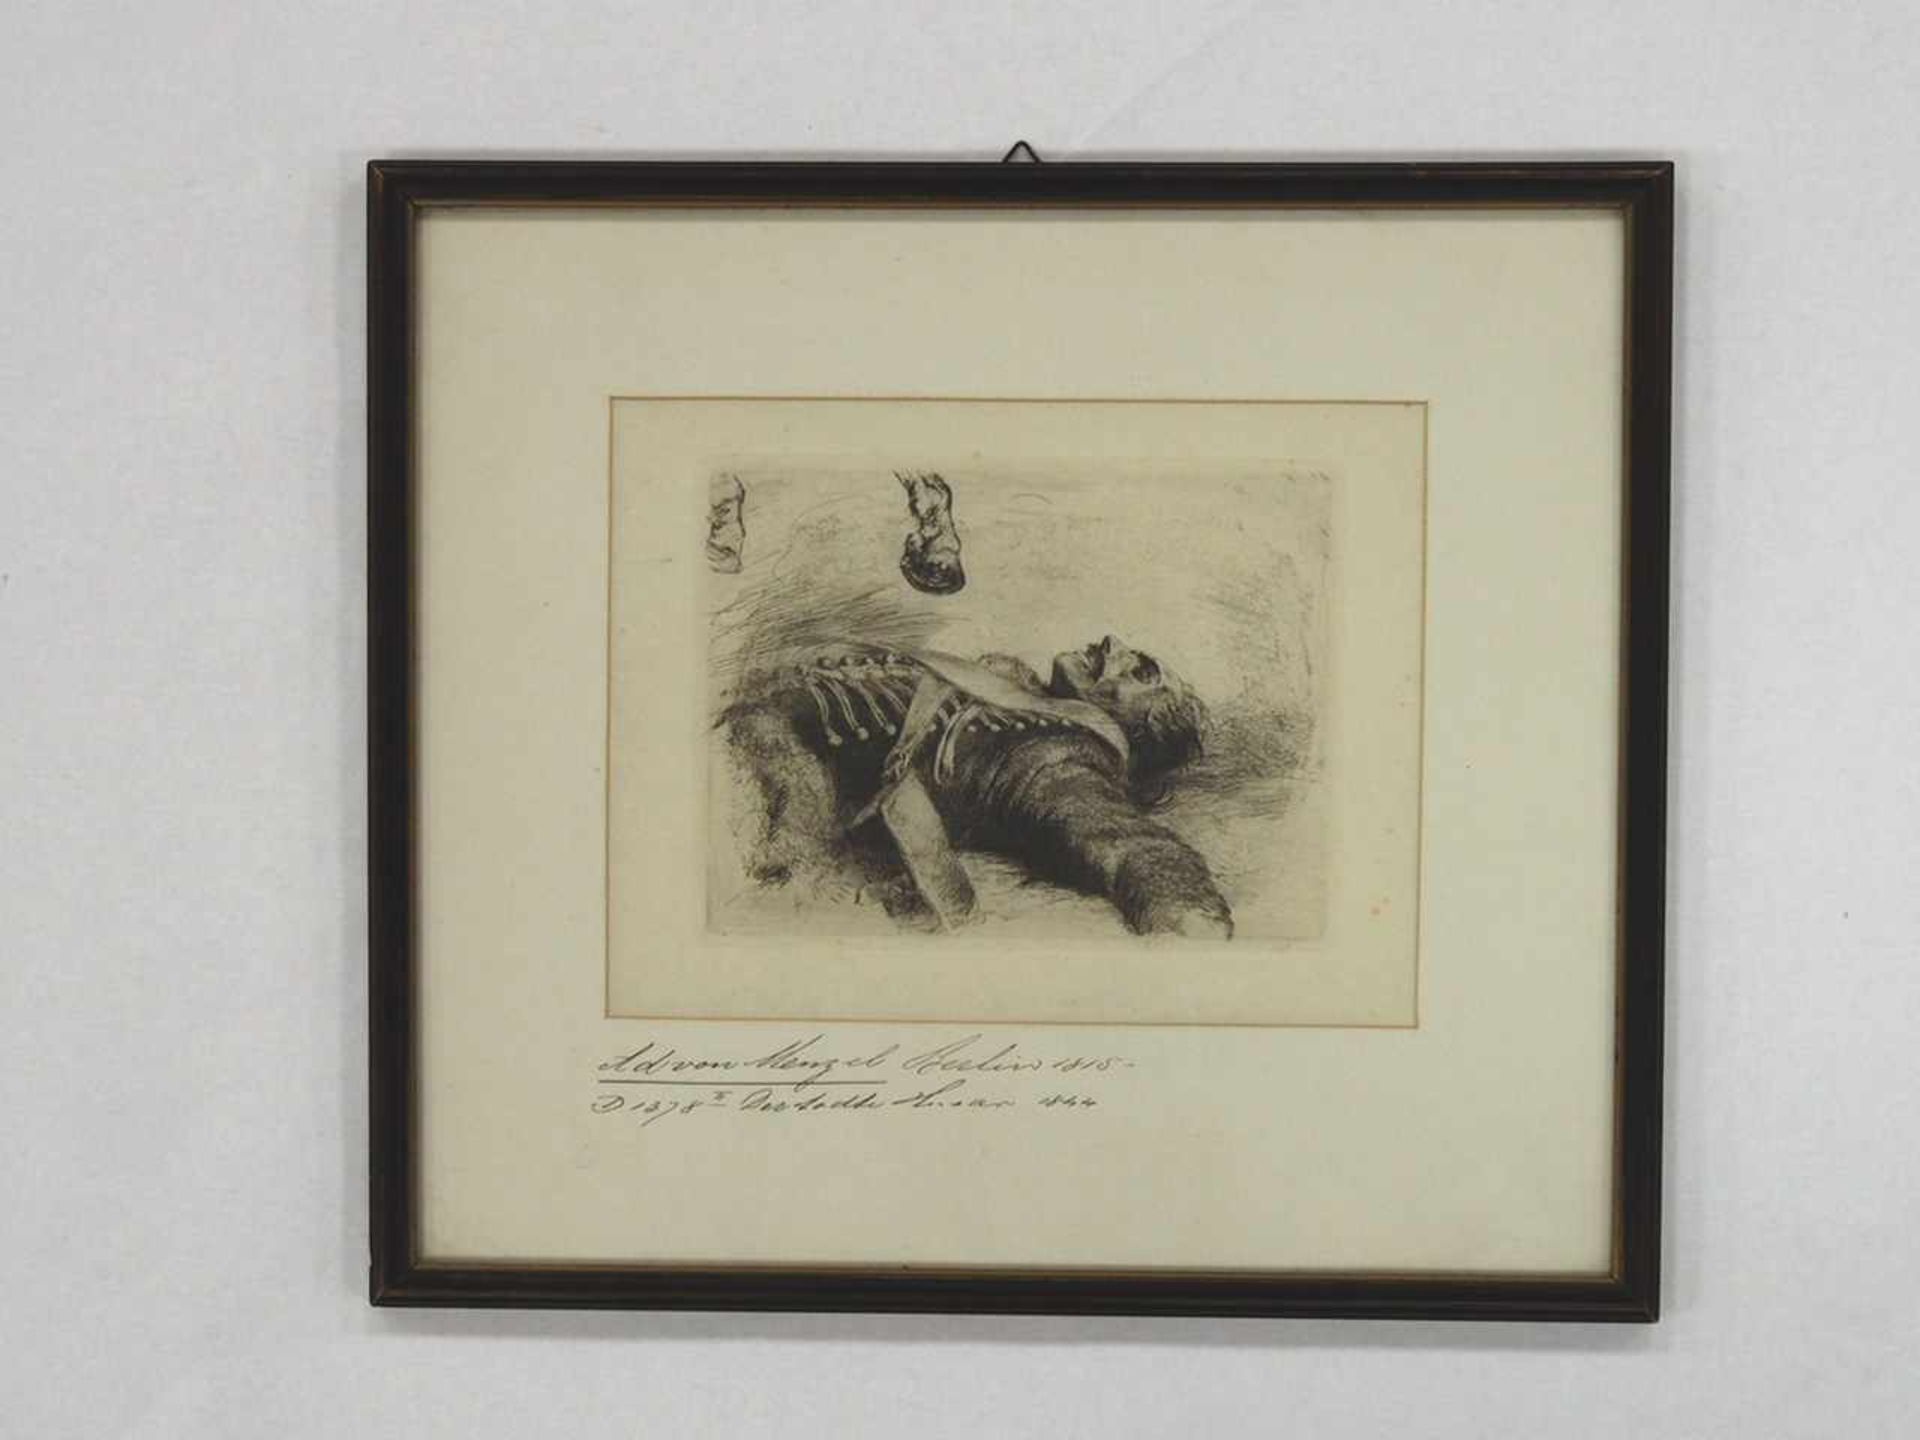 MENZEL, Adolf von1815-1905Der tote HusarRadierung, 1844, 15,5 x 20 cm, gerahmt unter Glas und - Bild 2 aus 2